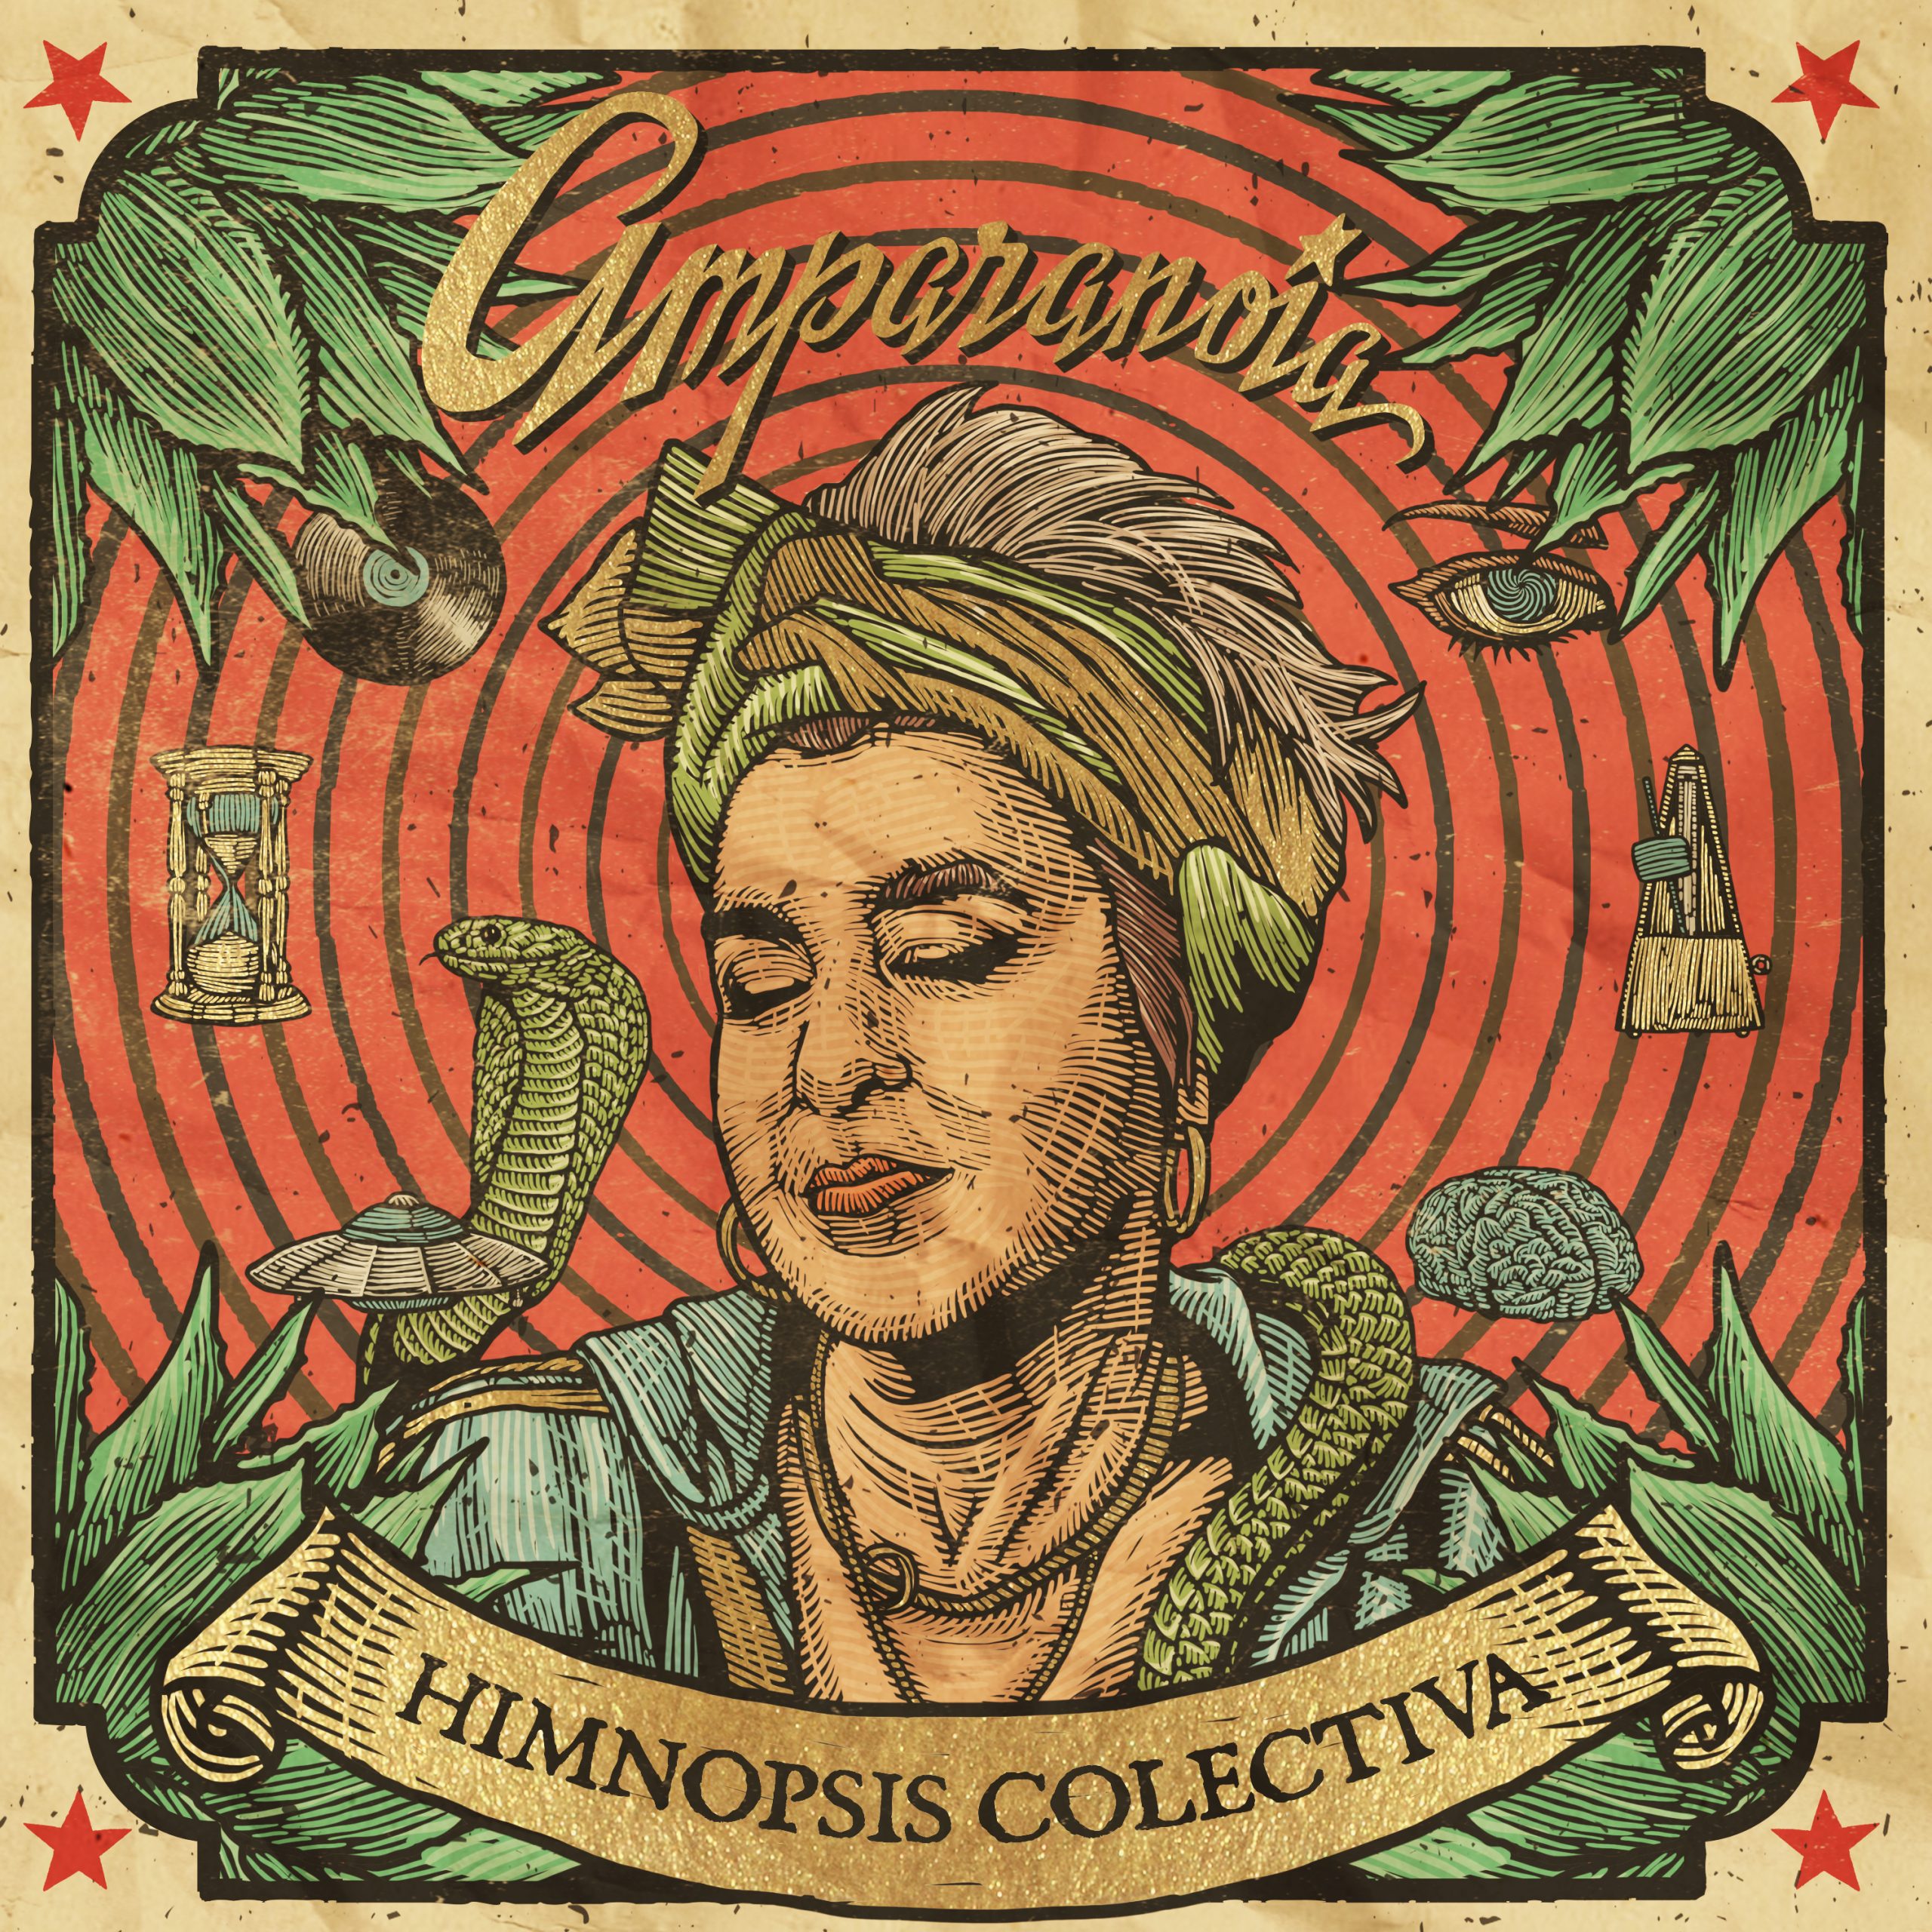 Amparonia "Himnopsis colectiva" LP